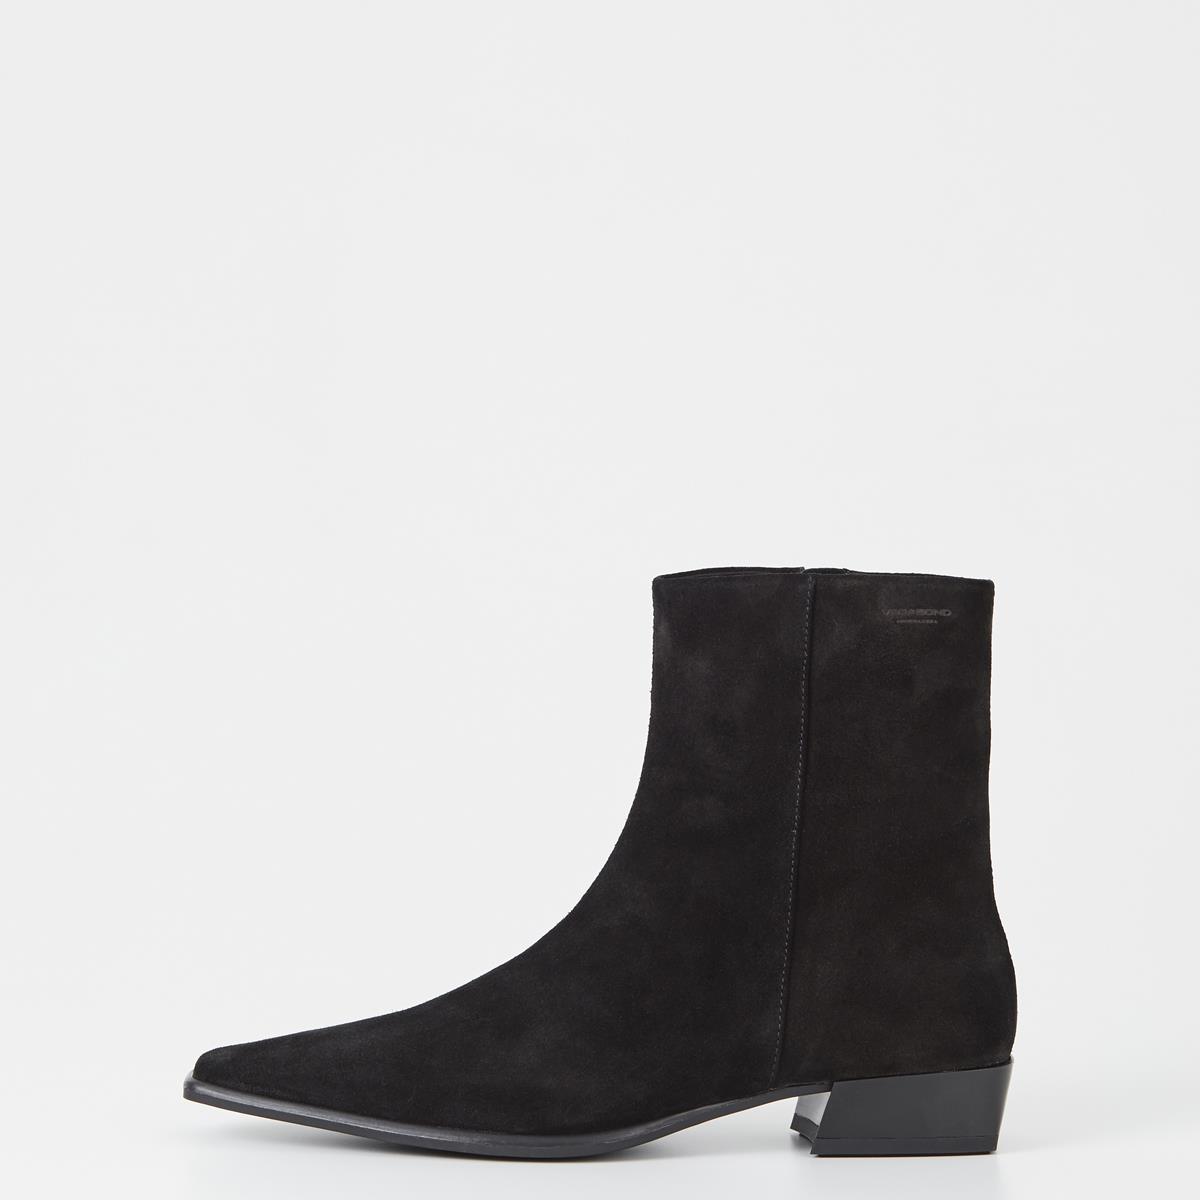 Nella - Black Boots Woman | Vagabond